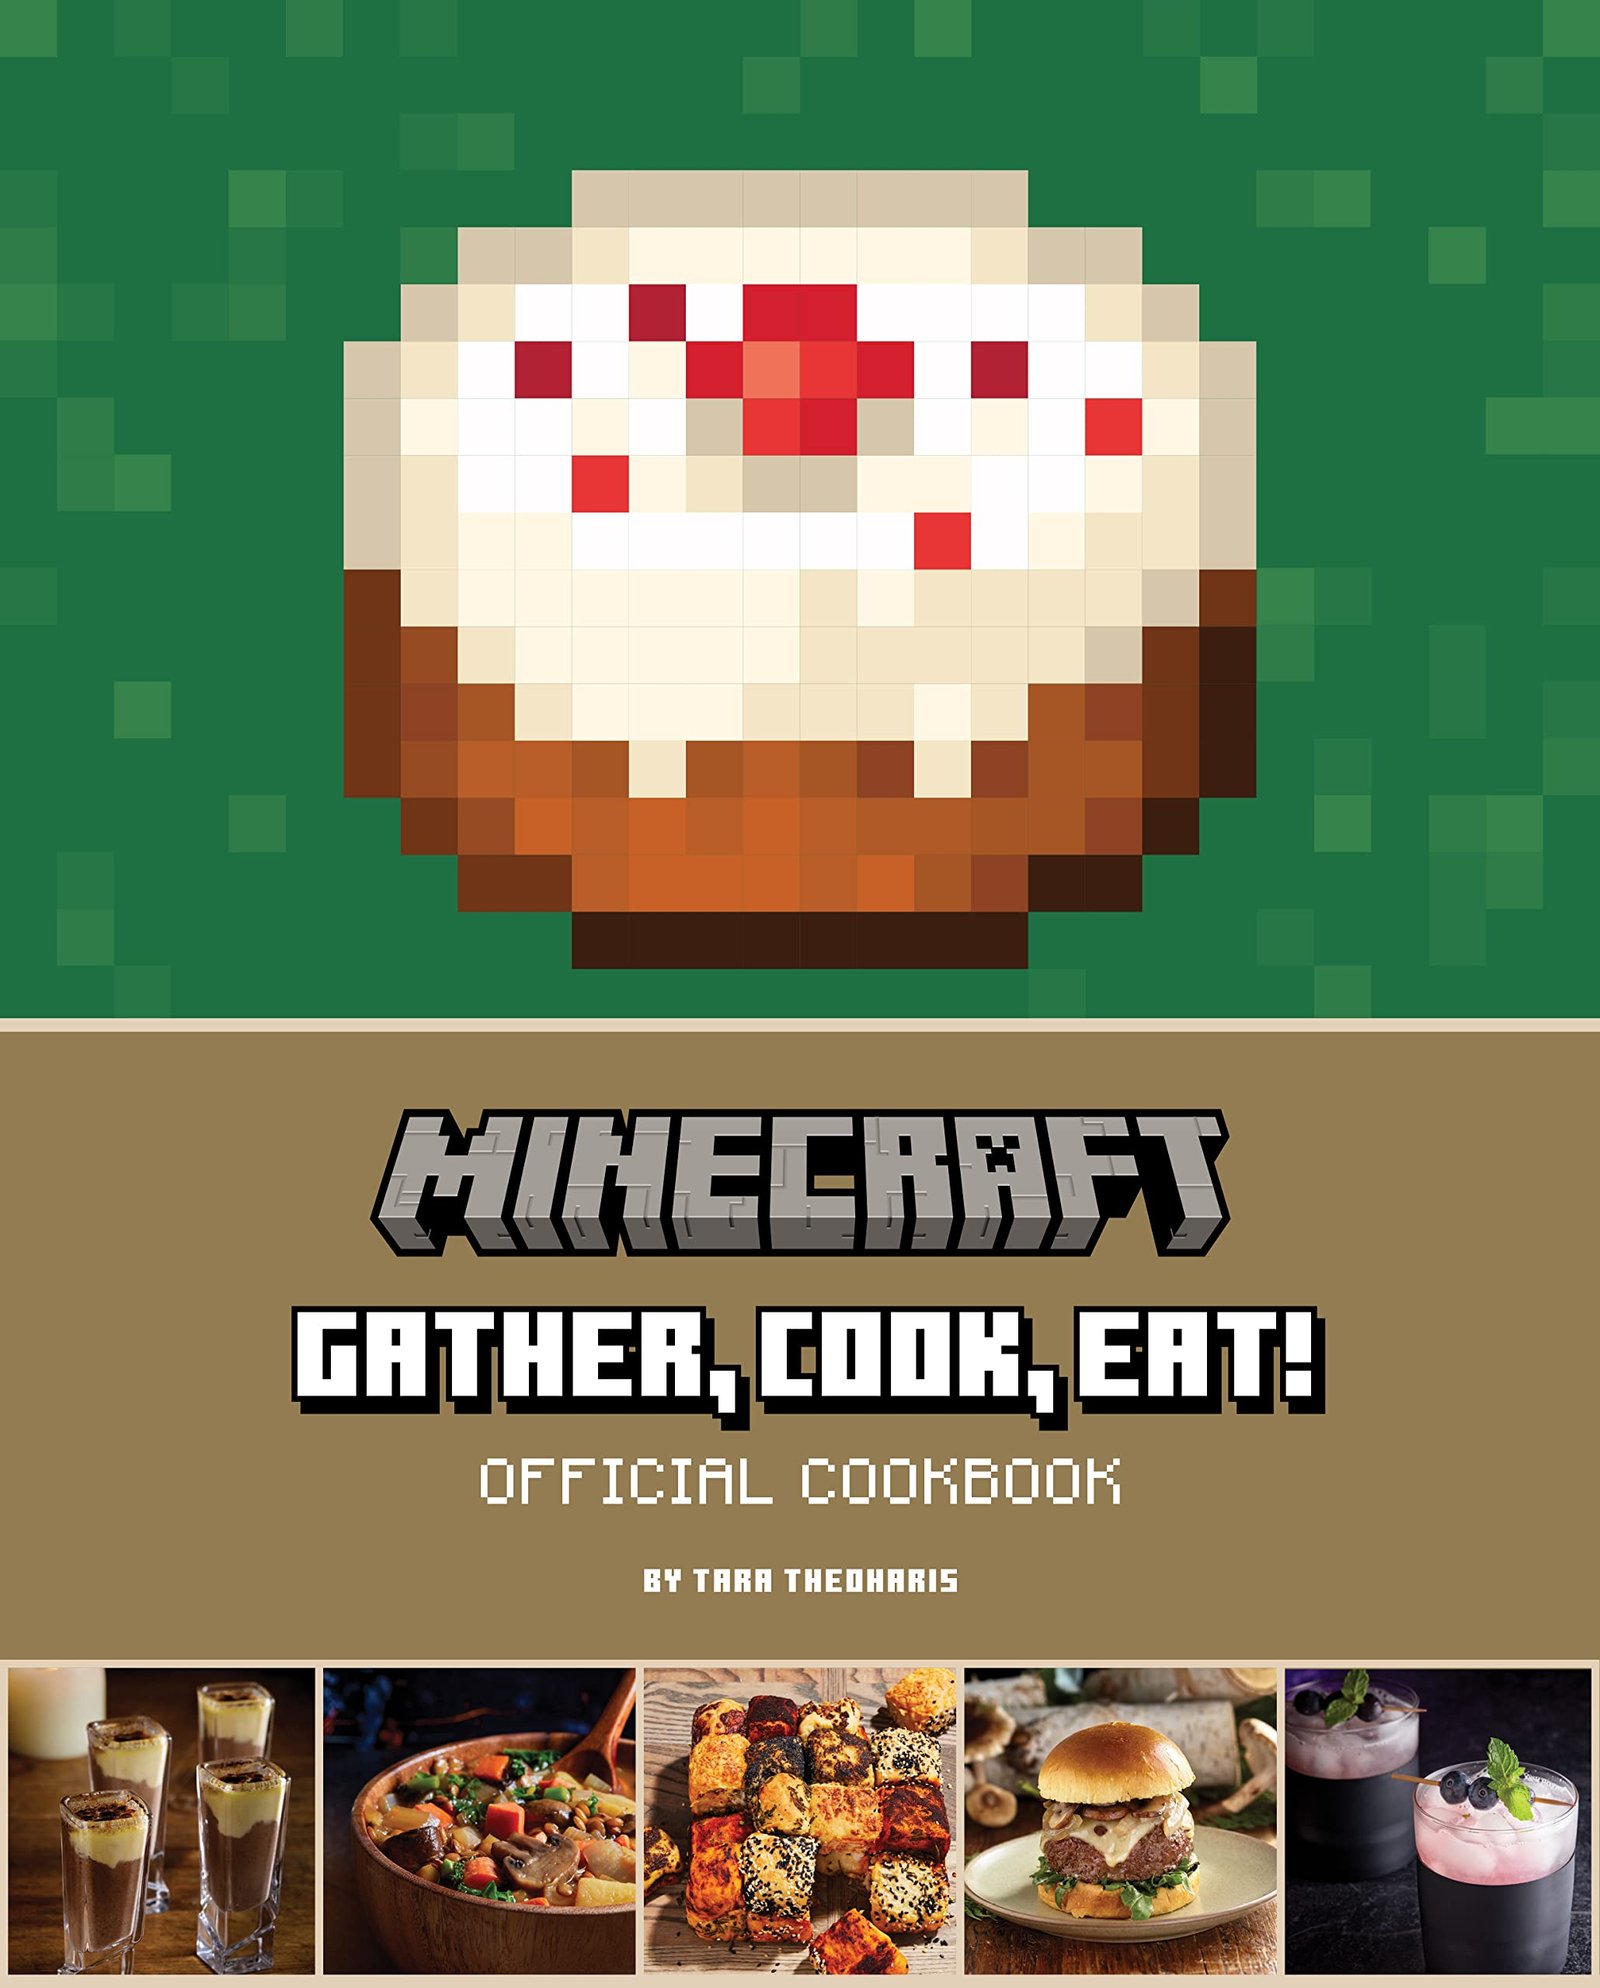 Descubre el libro oficial de recetas de cocina de Minecraft!